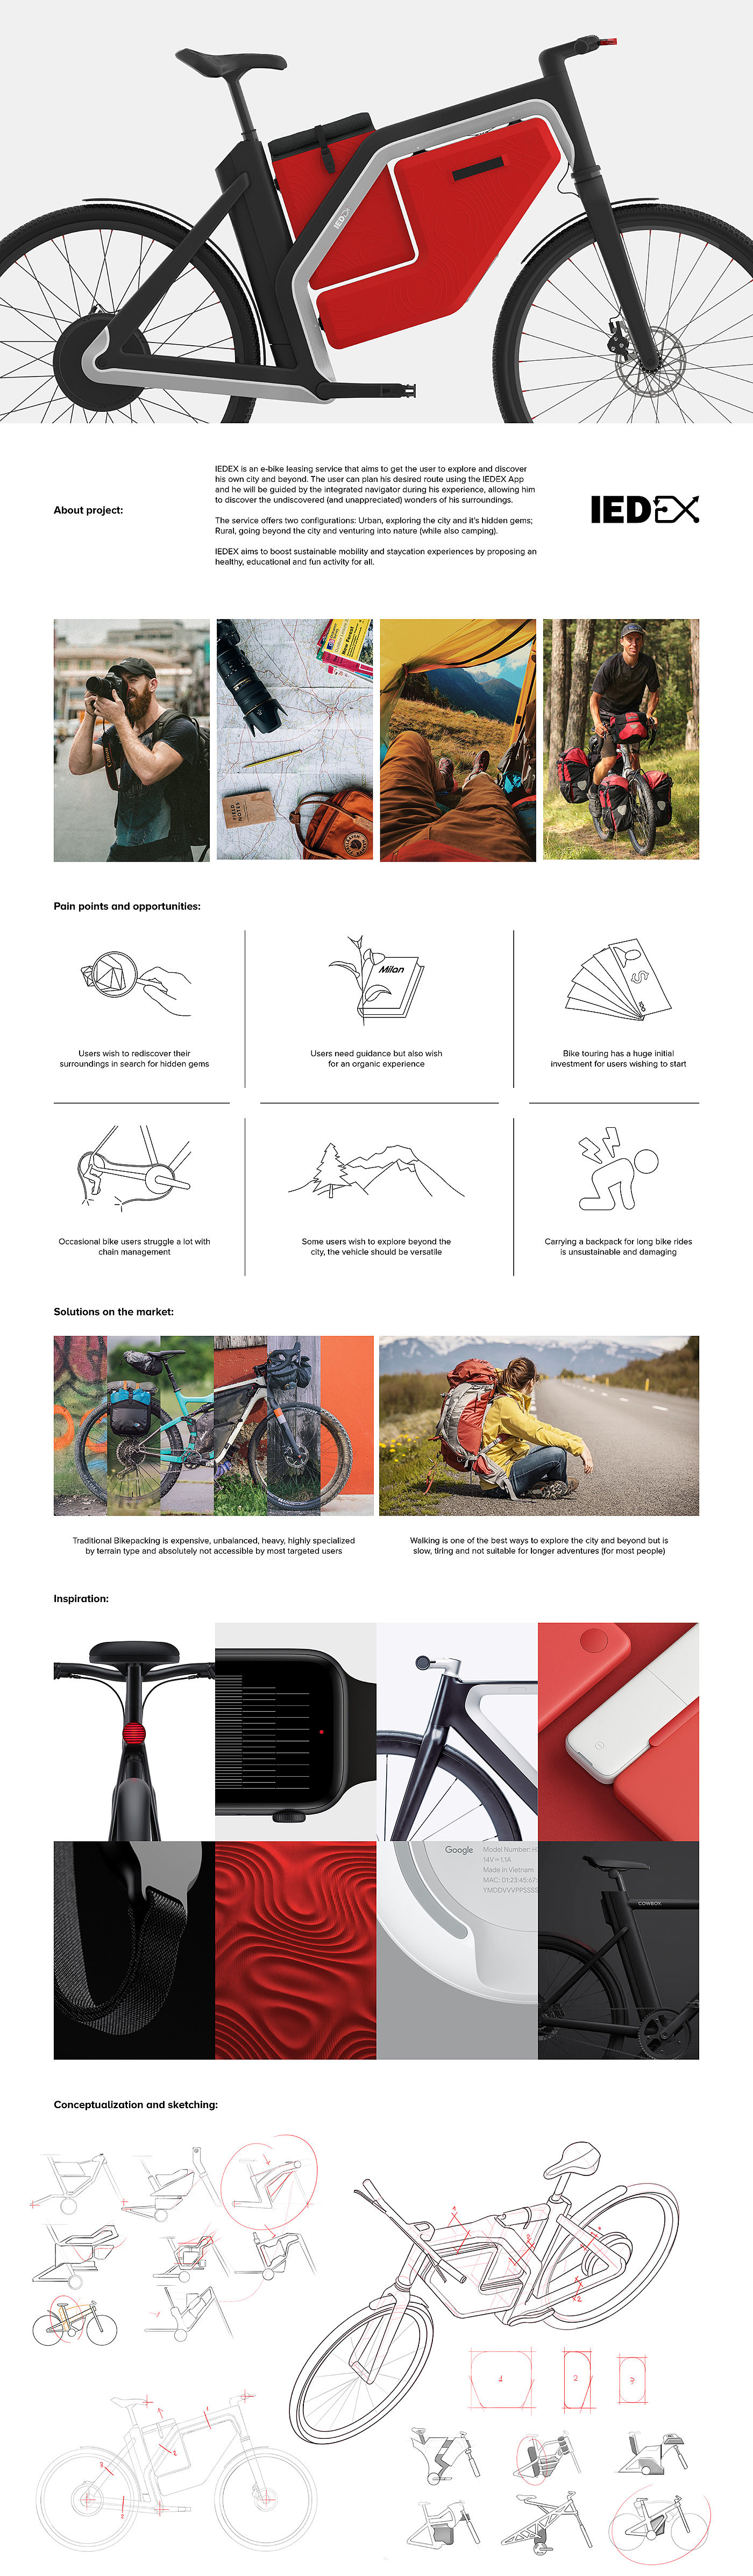 电动自行车，IEDEX，自行车，产品设计，